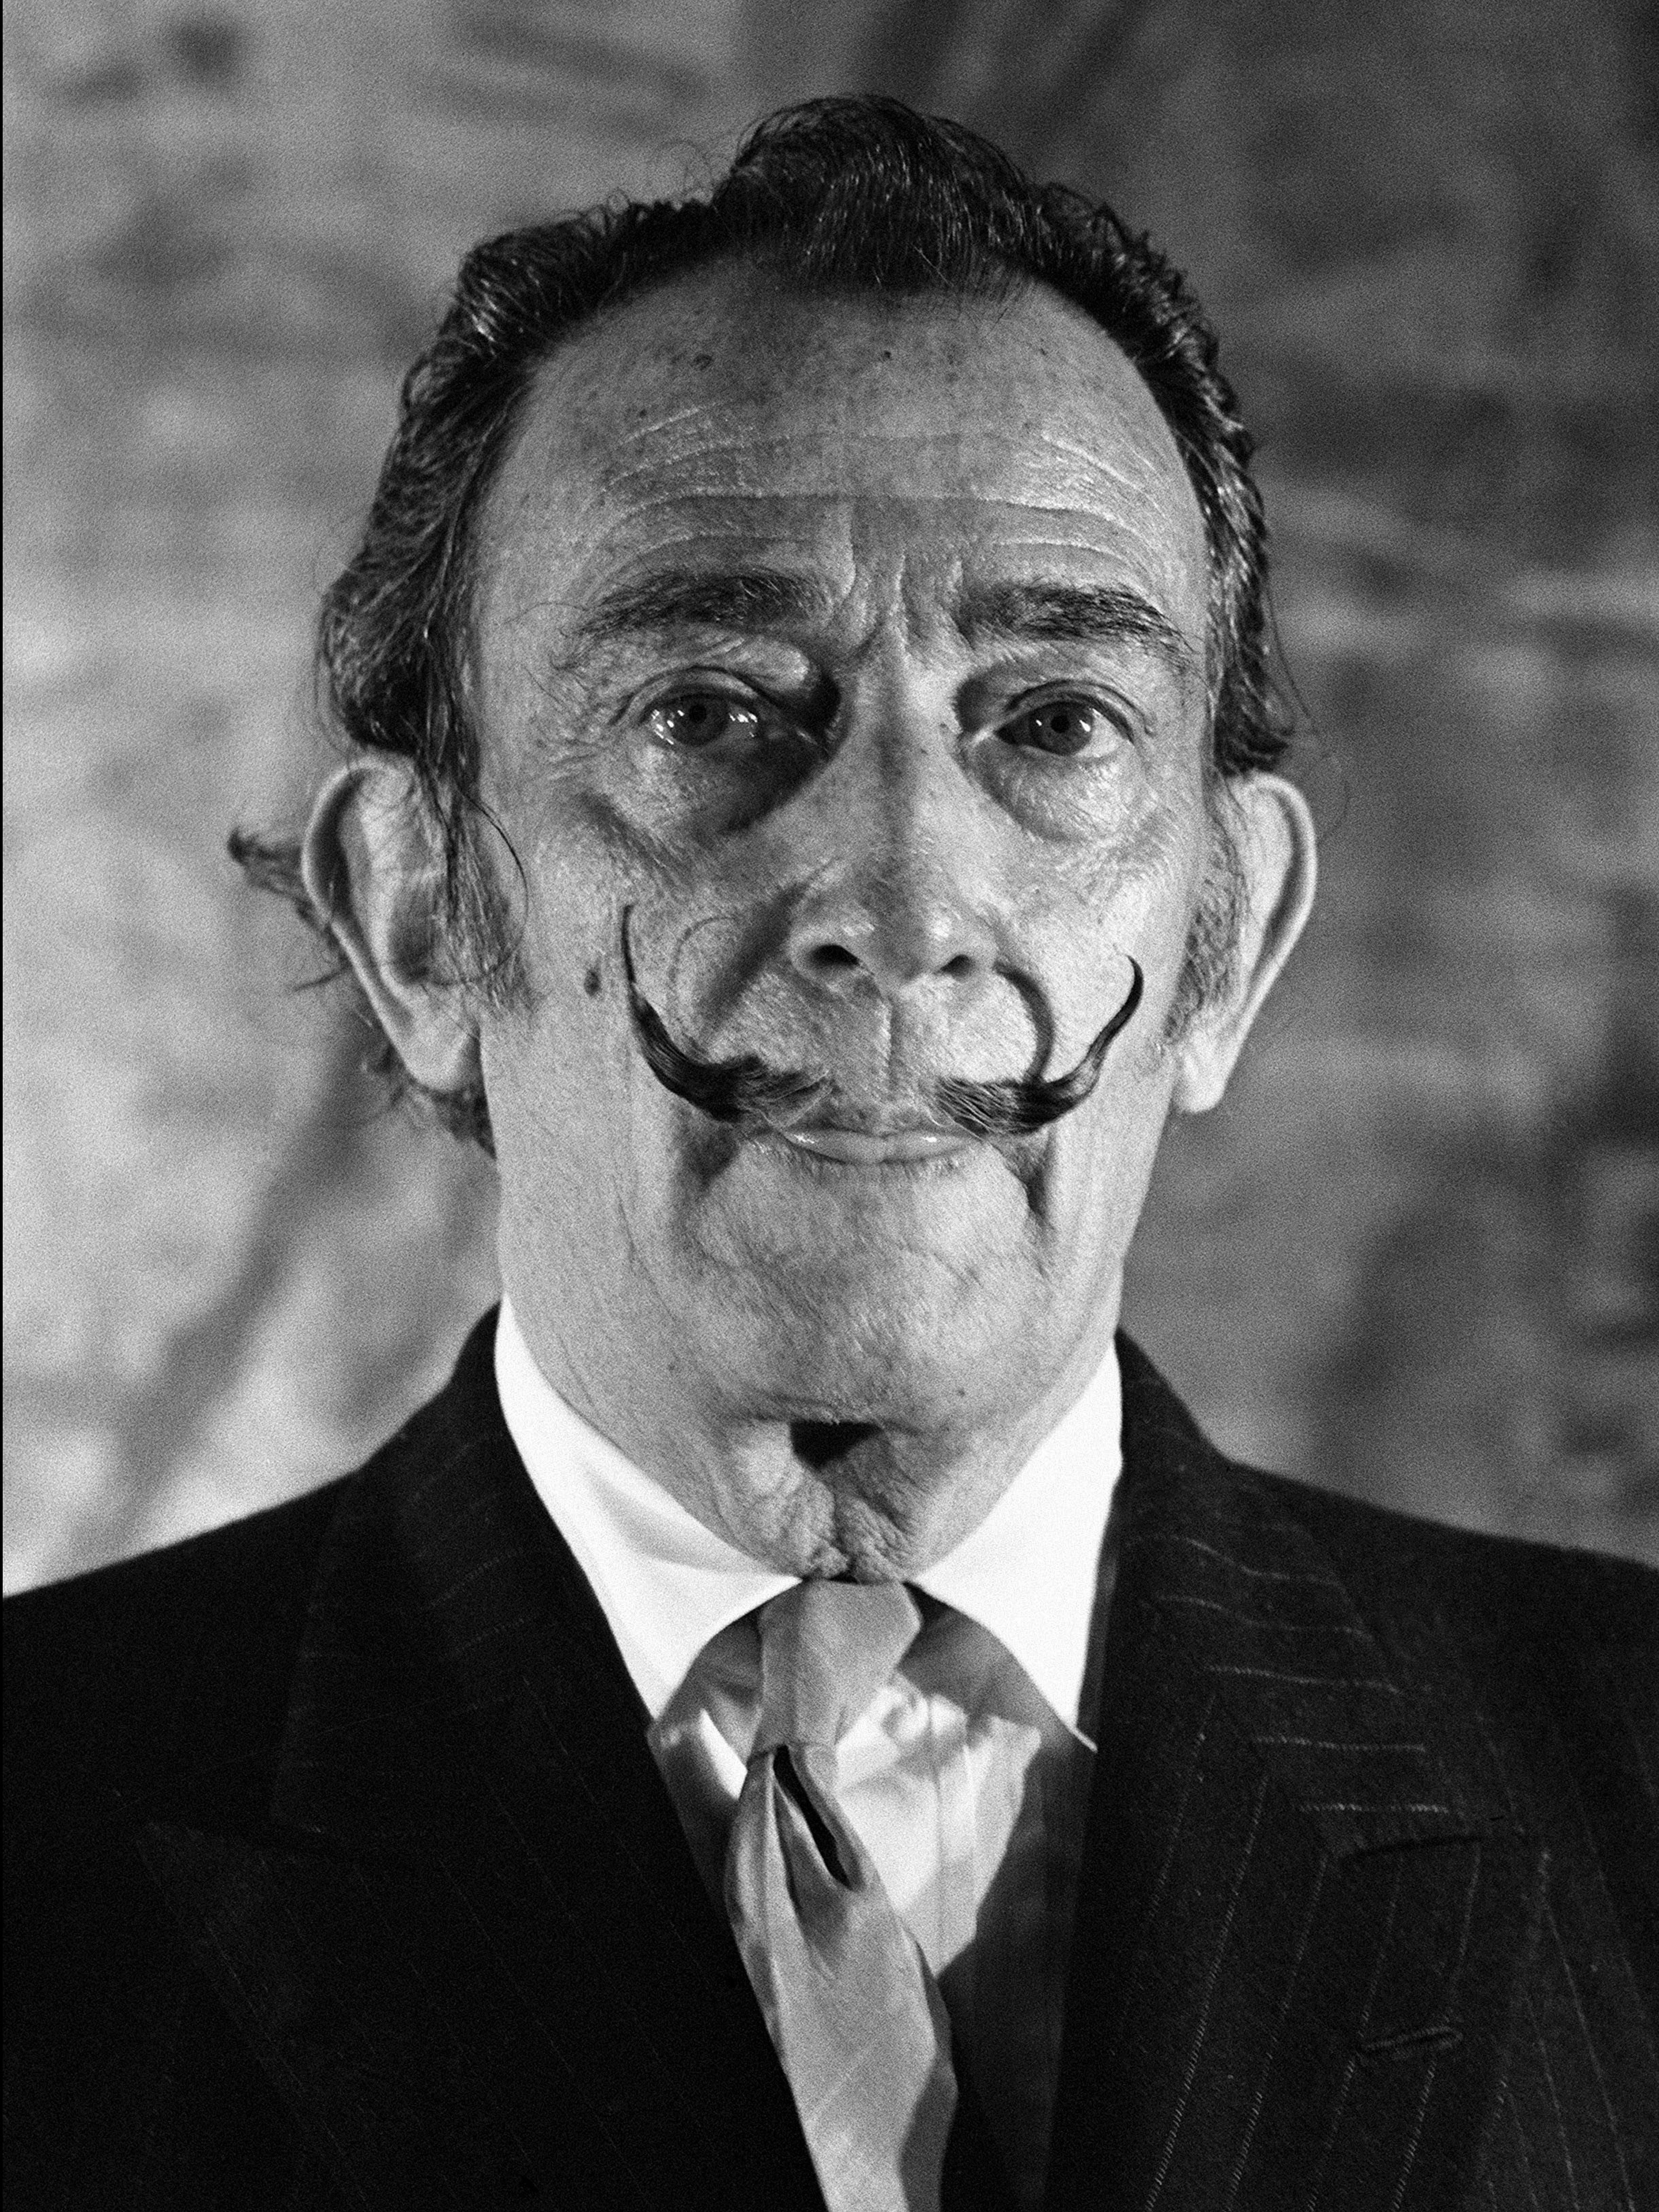 André Sas Portrait Photograph - Salvador Dalí